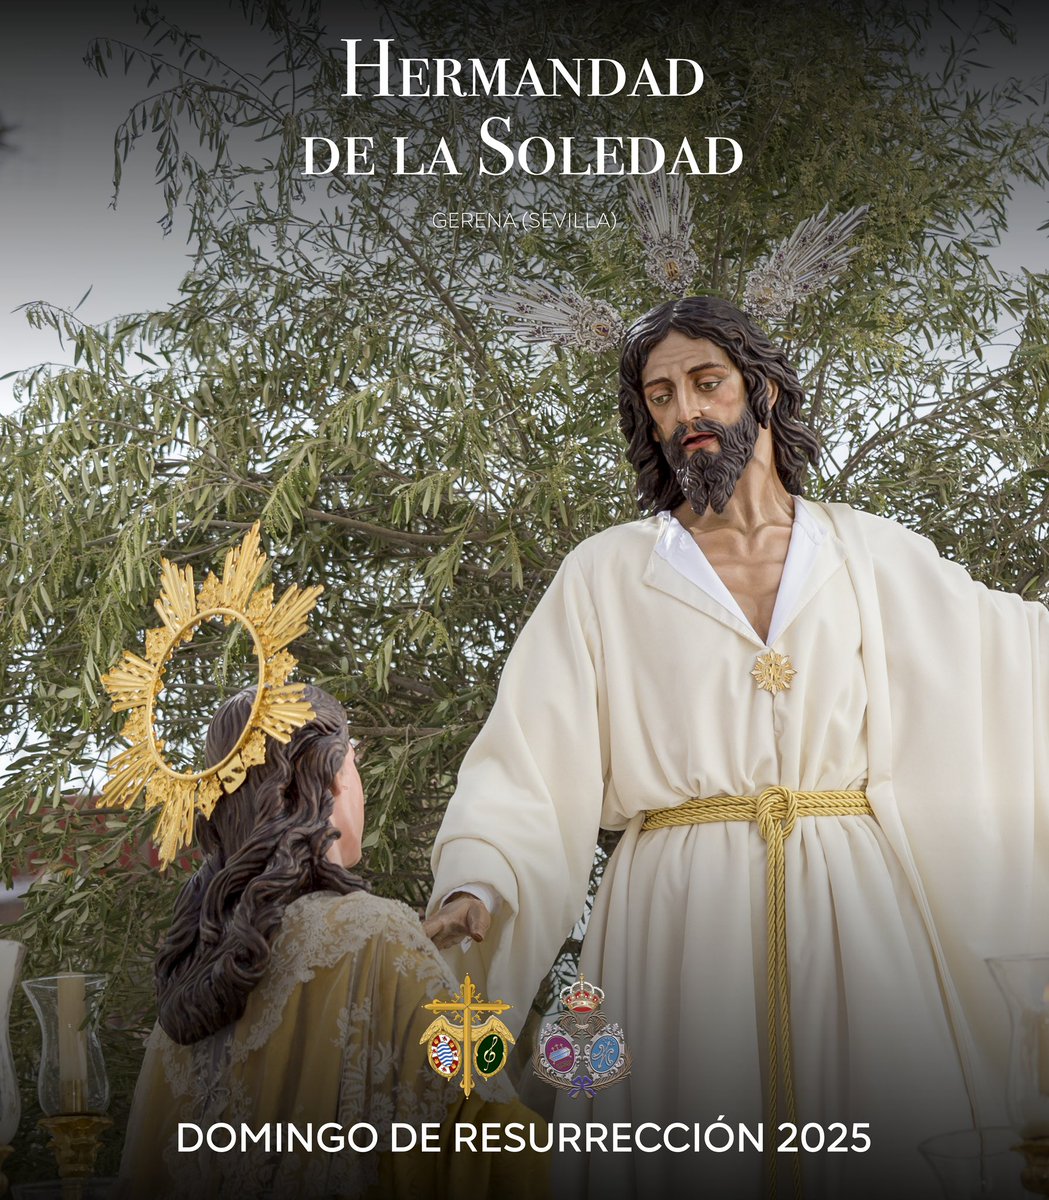 📣 𝗟𝗔 𝗦𝗢𝗟𝗘𝗗𝗔𝗗 𝗗𝗘 𝗚𝗘𝗥𝗘𝗡𝗔 𝟮𝟬𝟮𝟱.

Anunciamos el acuerdo firmado con la Hermandad de la @SoledadGerena (Sevilla) para acompañar musicalmente al Señor de la Paz en su Resurrección Gloriosa el próximo Domingo de Resurrección.